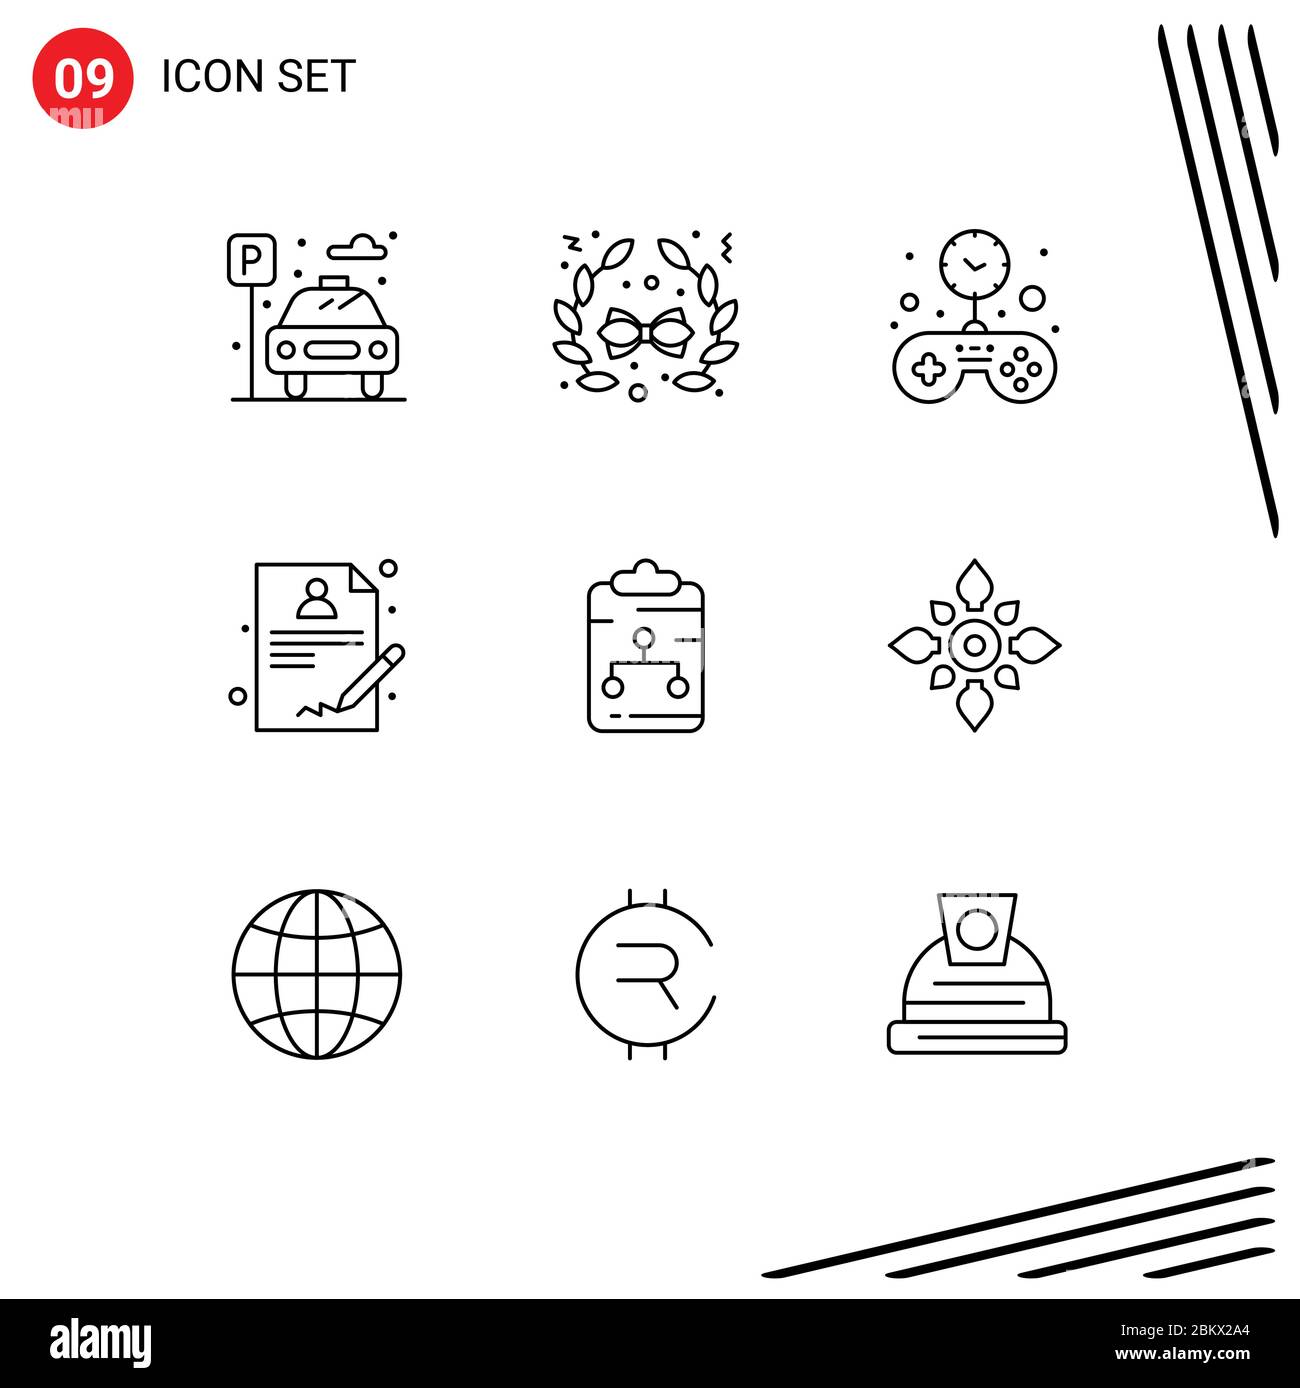 Gruppo di 9 elementi che delinea segni e simboli per documenti, connessioni, giochi, appunti, report elementi di progettazione vettoriale modificabili Illustrazione Vettoriale